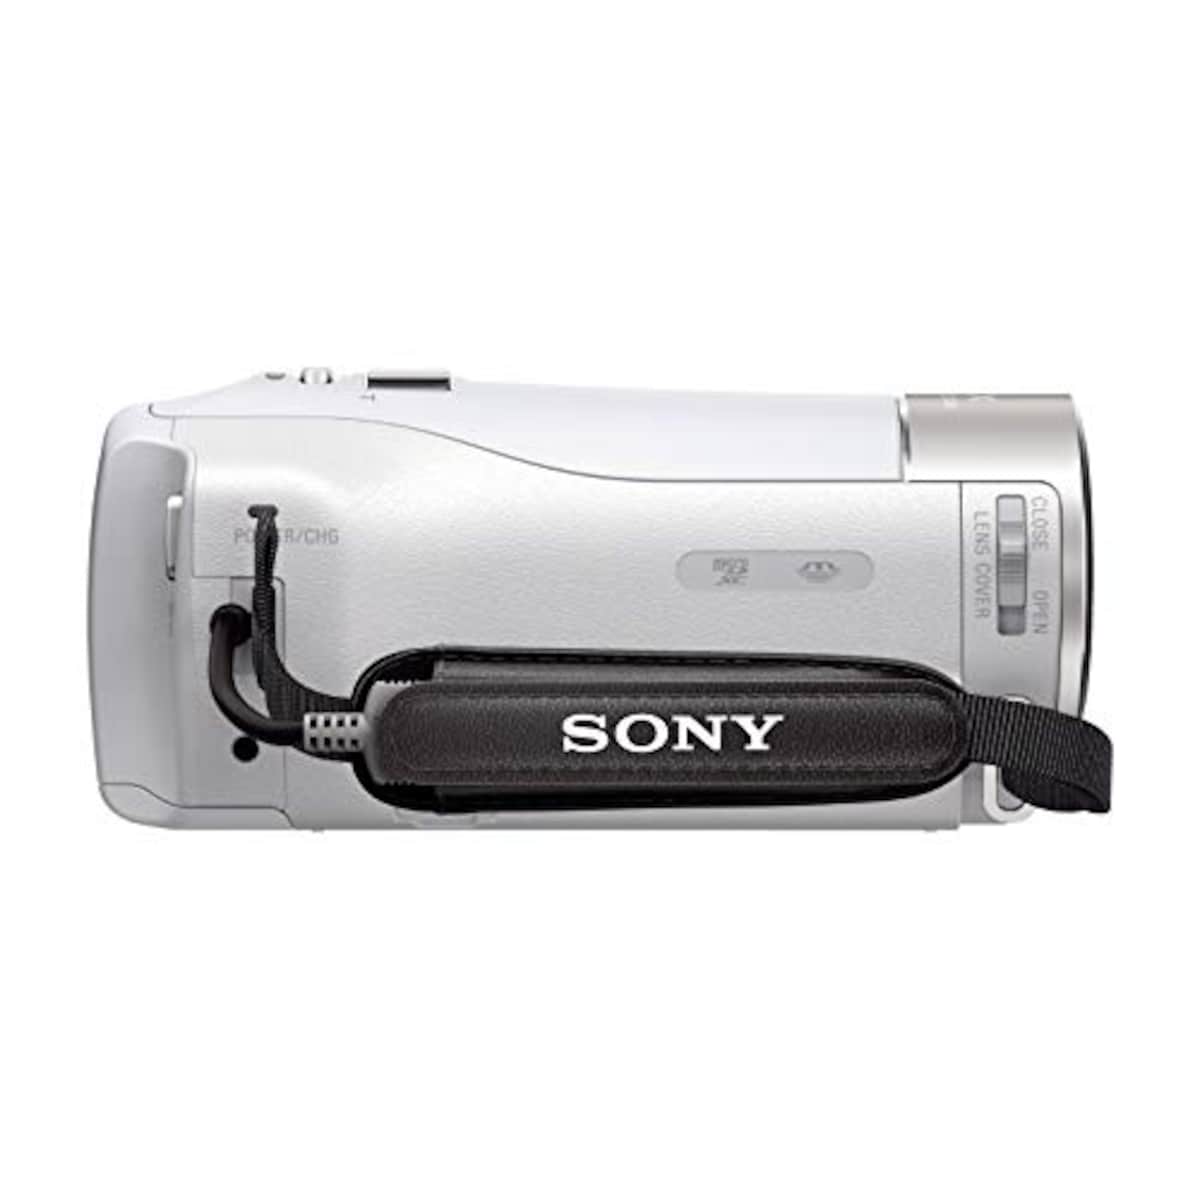  【CX470 と ケース&ストラップ セット】 大切なカメラをキズや汚れからガードしたい方に。HDR-CX470 ホワイト + LCS-MCS2 ライトブラウン画像9 